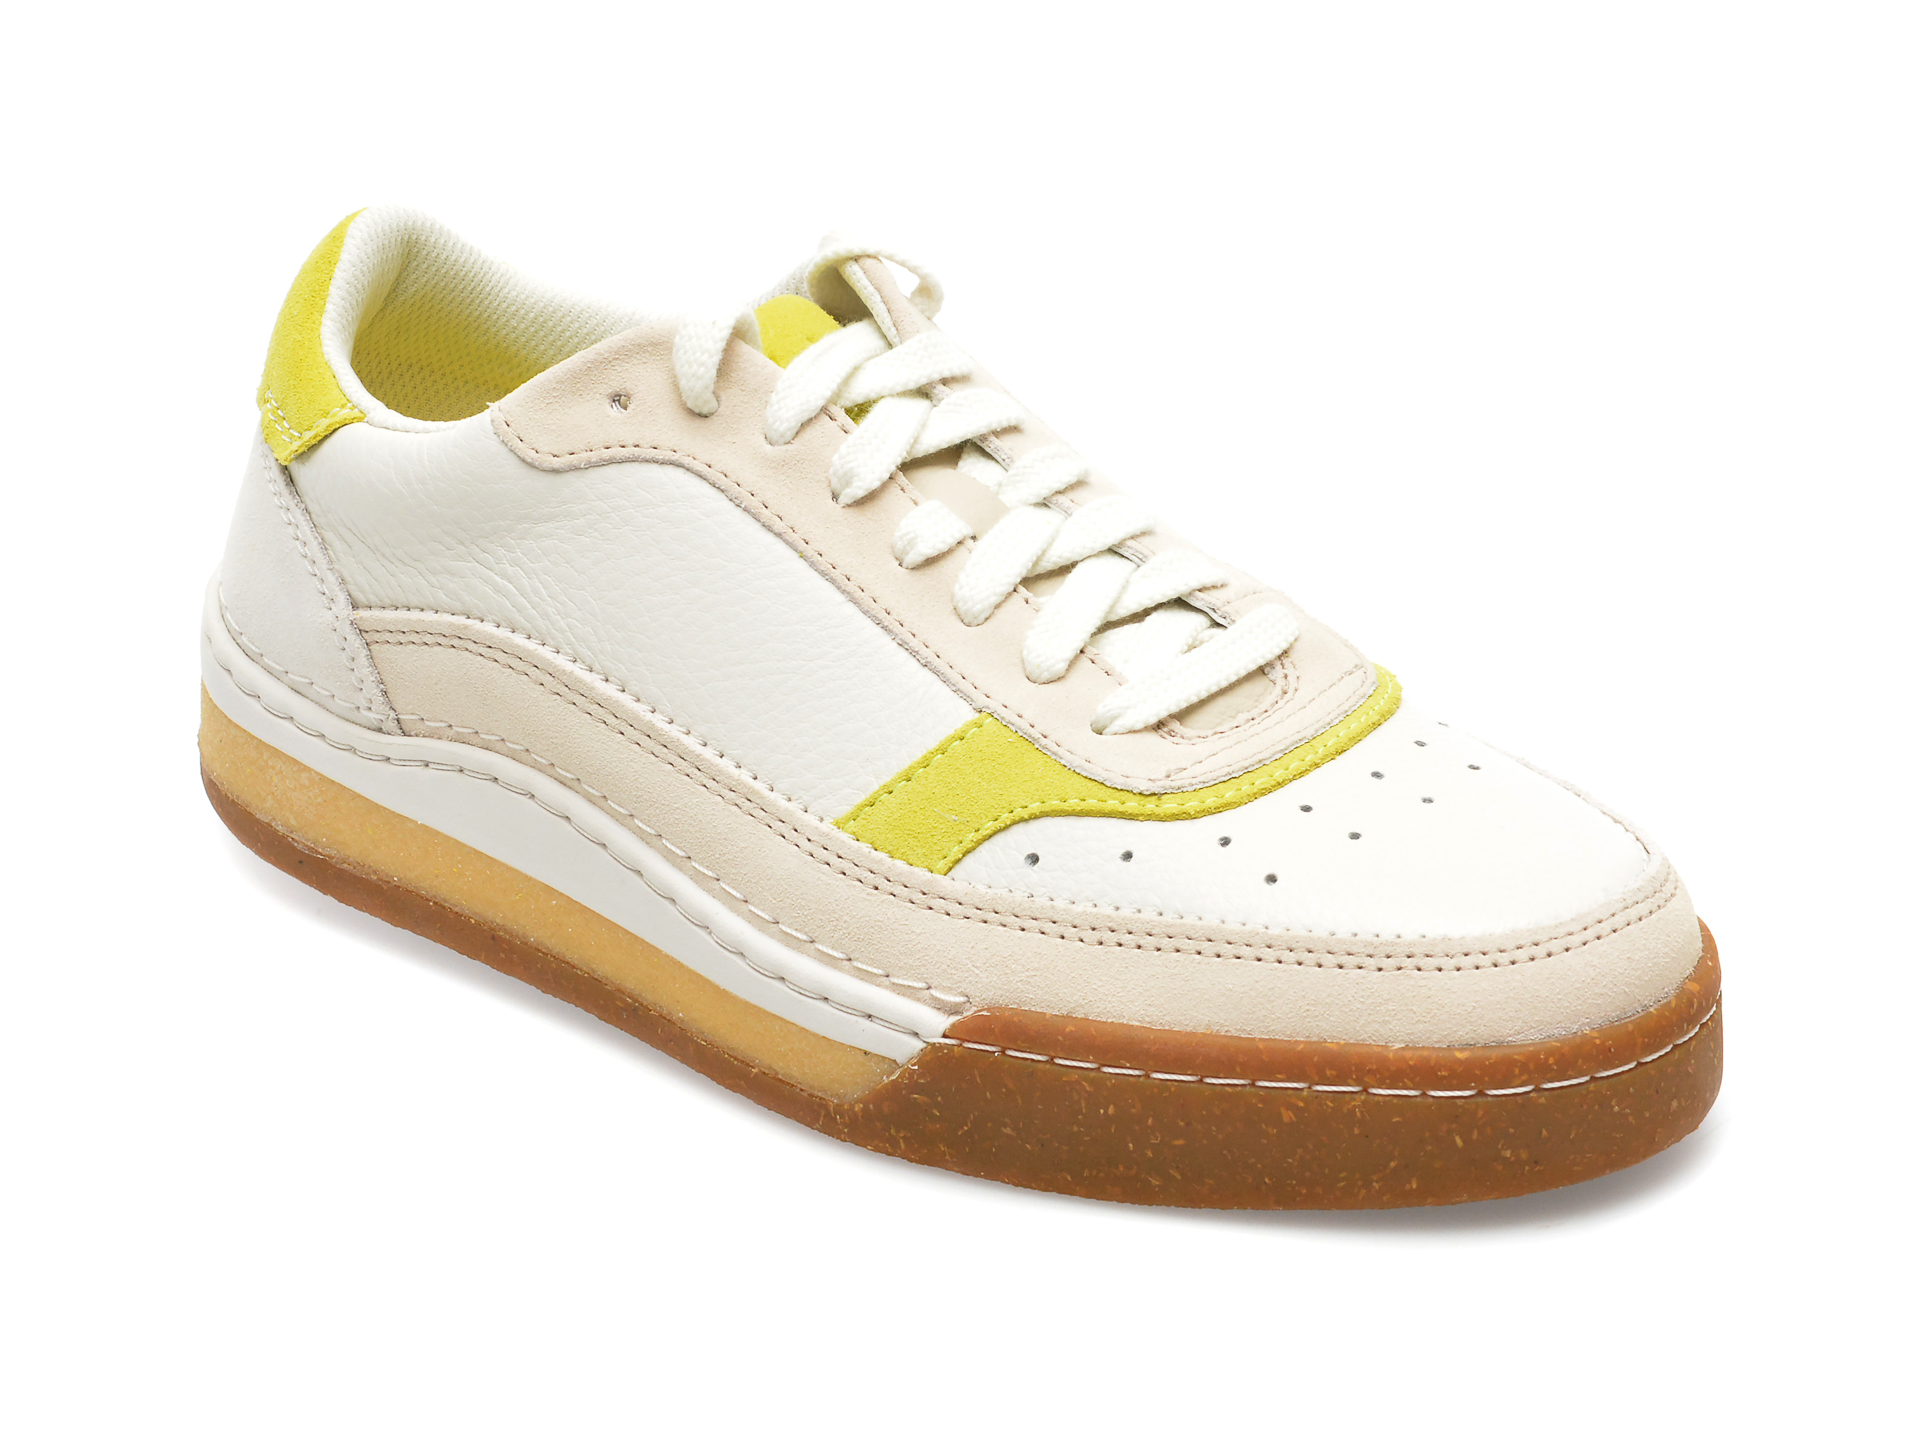 Pantofi CLARKS albi, CRAFTCOURTLACE 0912, din piele intoarsa /barbati/pantofi imagine noua